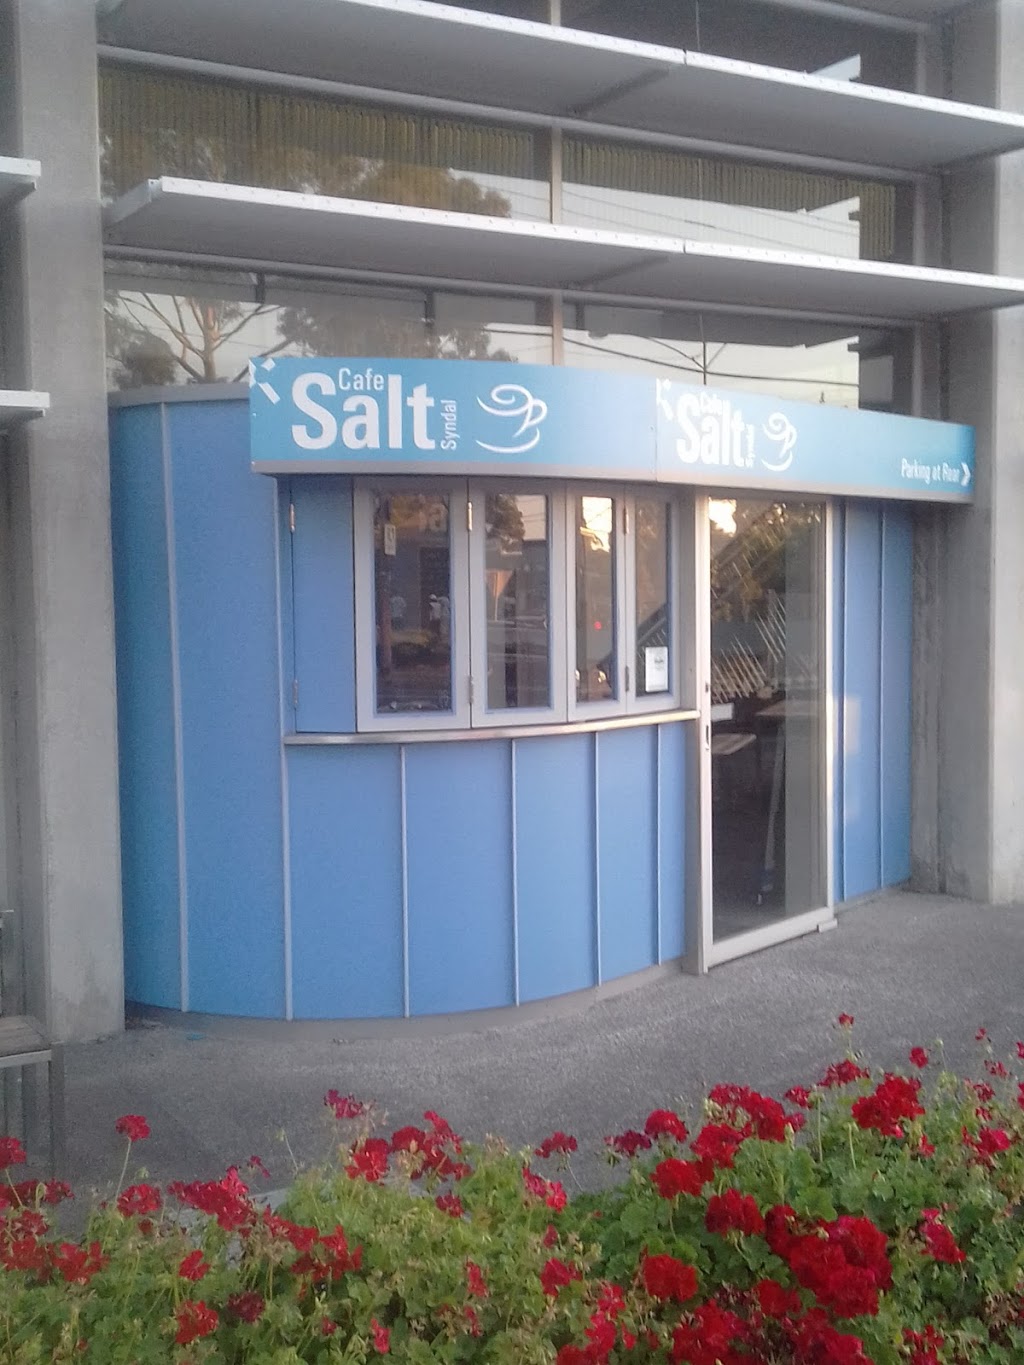 Salt Cafe Syndal | cafe | 588 High St Rd, Glen Waverley VIC 3150, Australia | 0398039144 OR +61 3 9803 9144